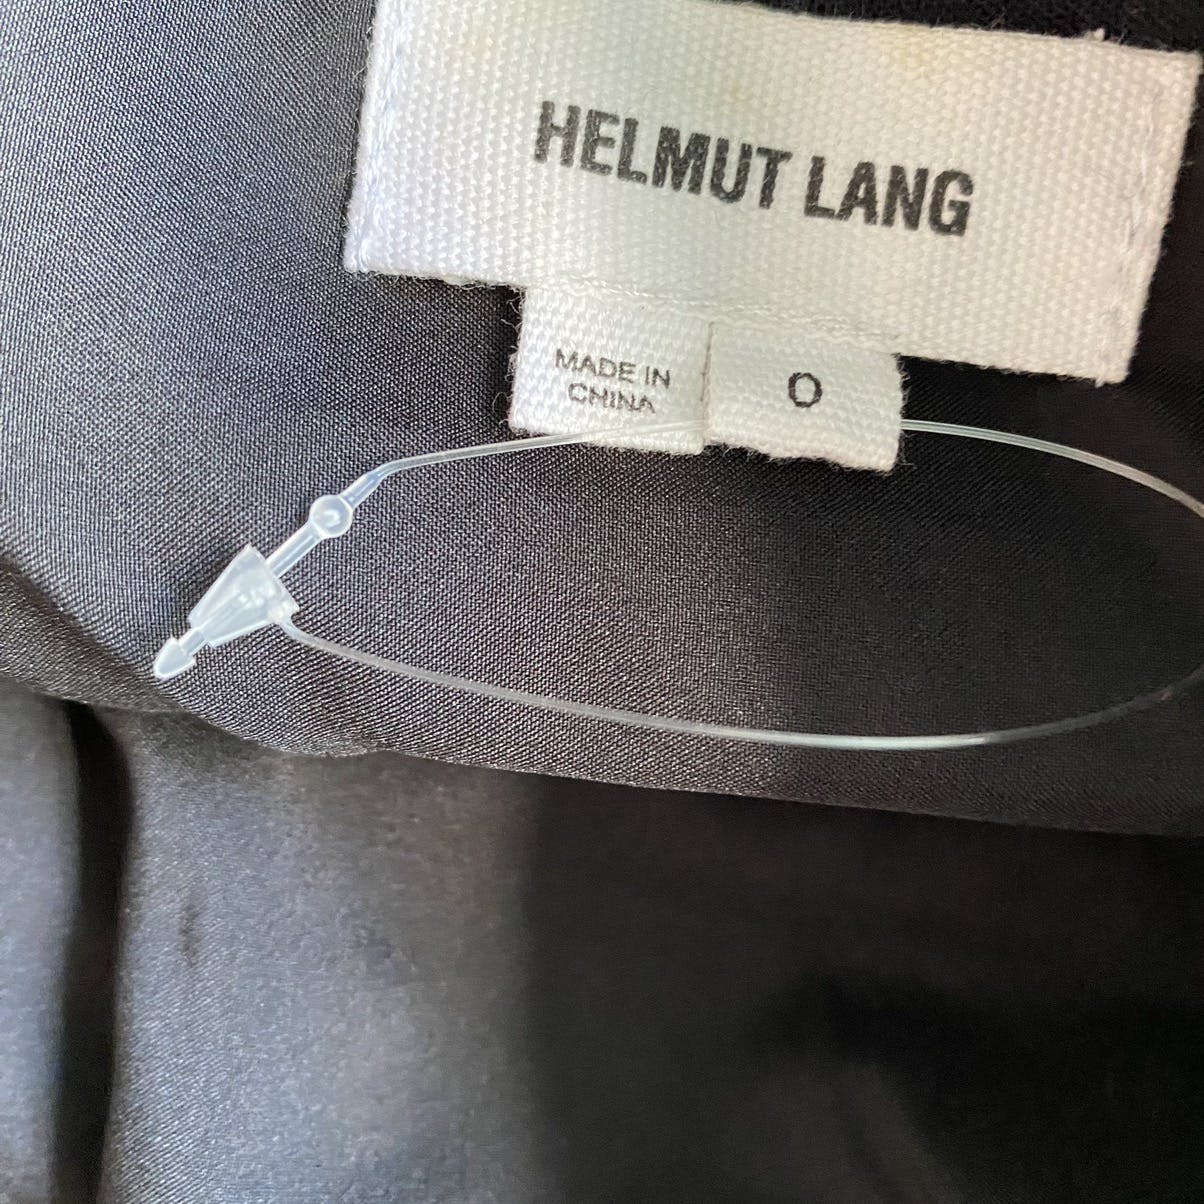 Helmut Lang Black Pony Hair Skirt - 3